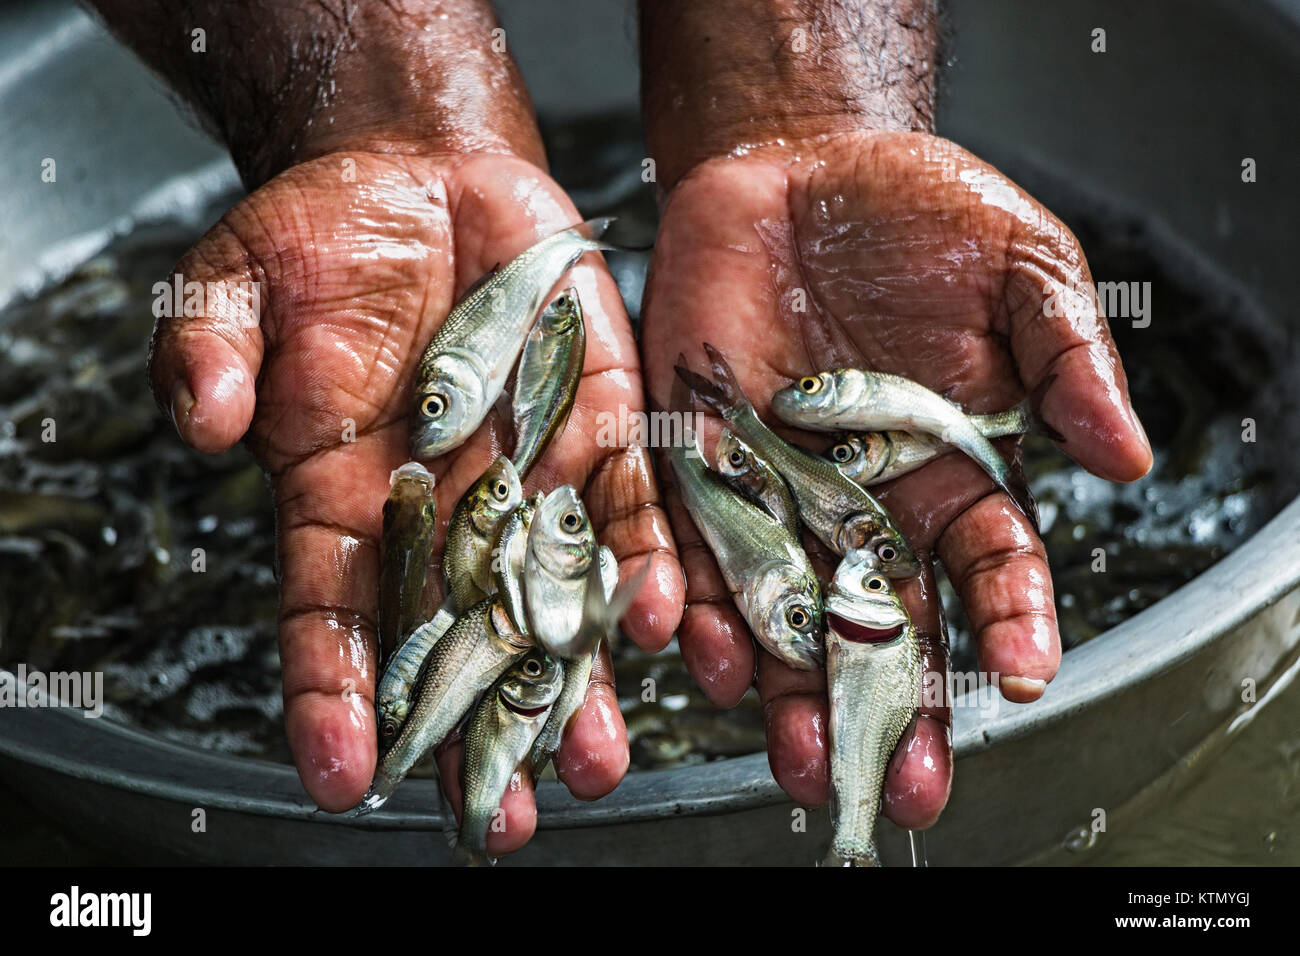 Fischsaat spielt eine wichtige Rolle in der Aquakultur. Aufgrund der guten Qualität der Saatgut Fischzüchter können ihren Gewinn verlieren. Auf dem Foto ist ein qualitativ hochwertiger Fischkern zu sehen. Stockfoto